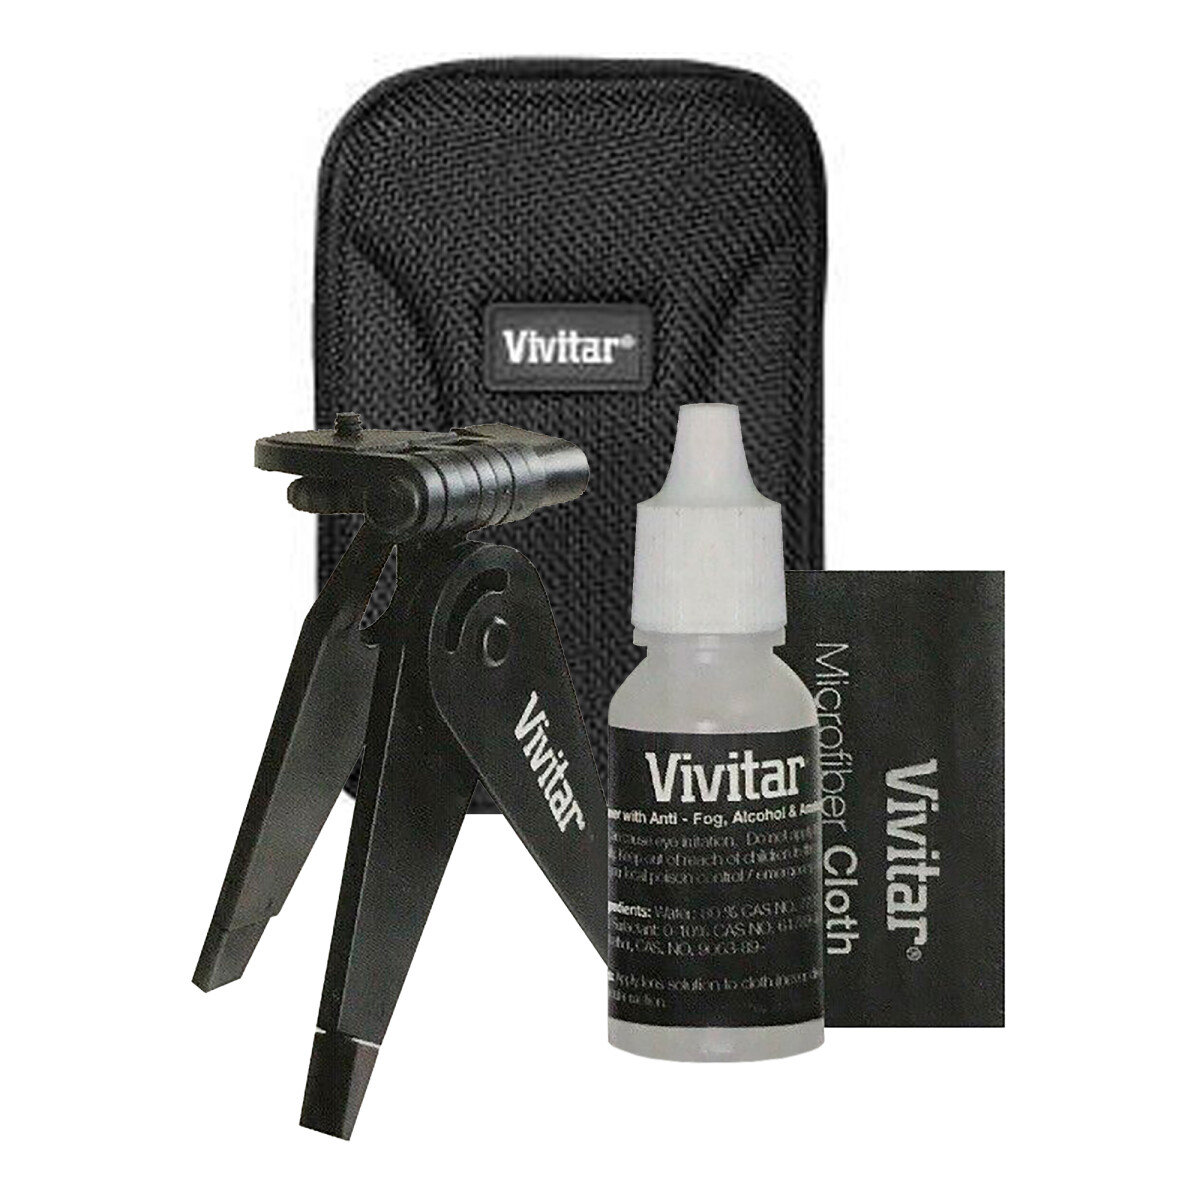 Vivitar - Fotografía Accesorios - VIVSK501 - Filmadoras Starter Kit, Estuche, Trípode, Paño y Liquid - 001 